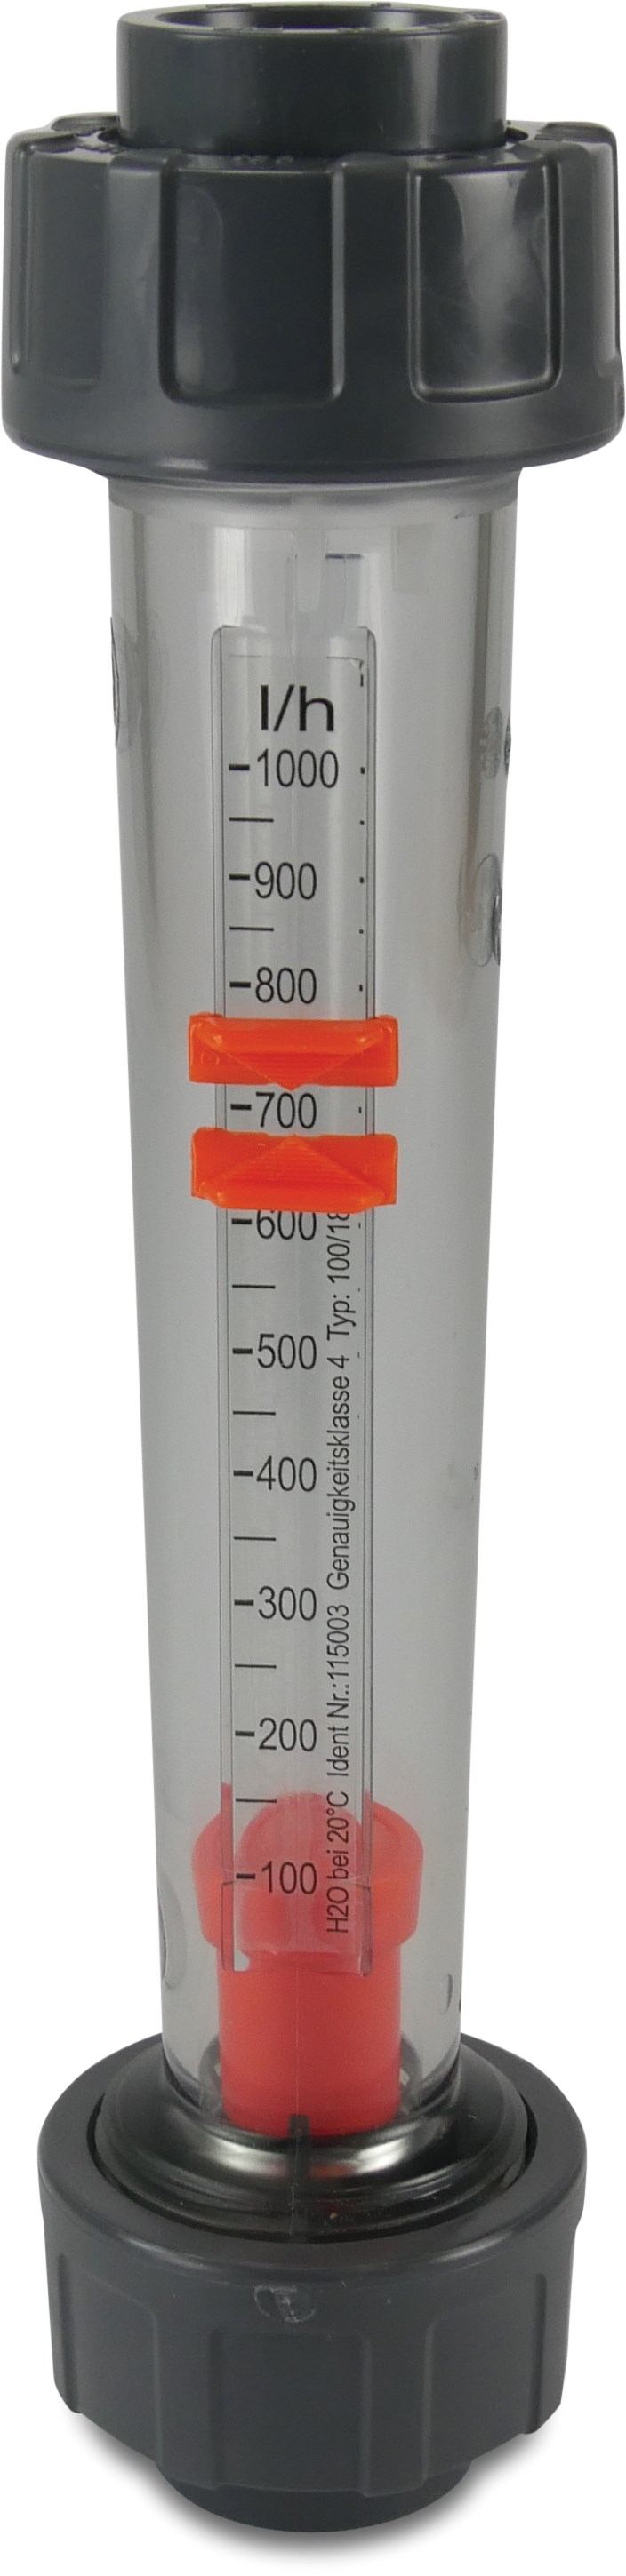 Flowmeter PVC-U DN15 x 20 mm x 20 mm lijmmof 10bar 25-250 l/u